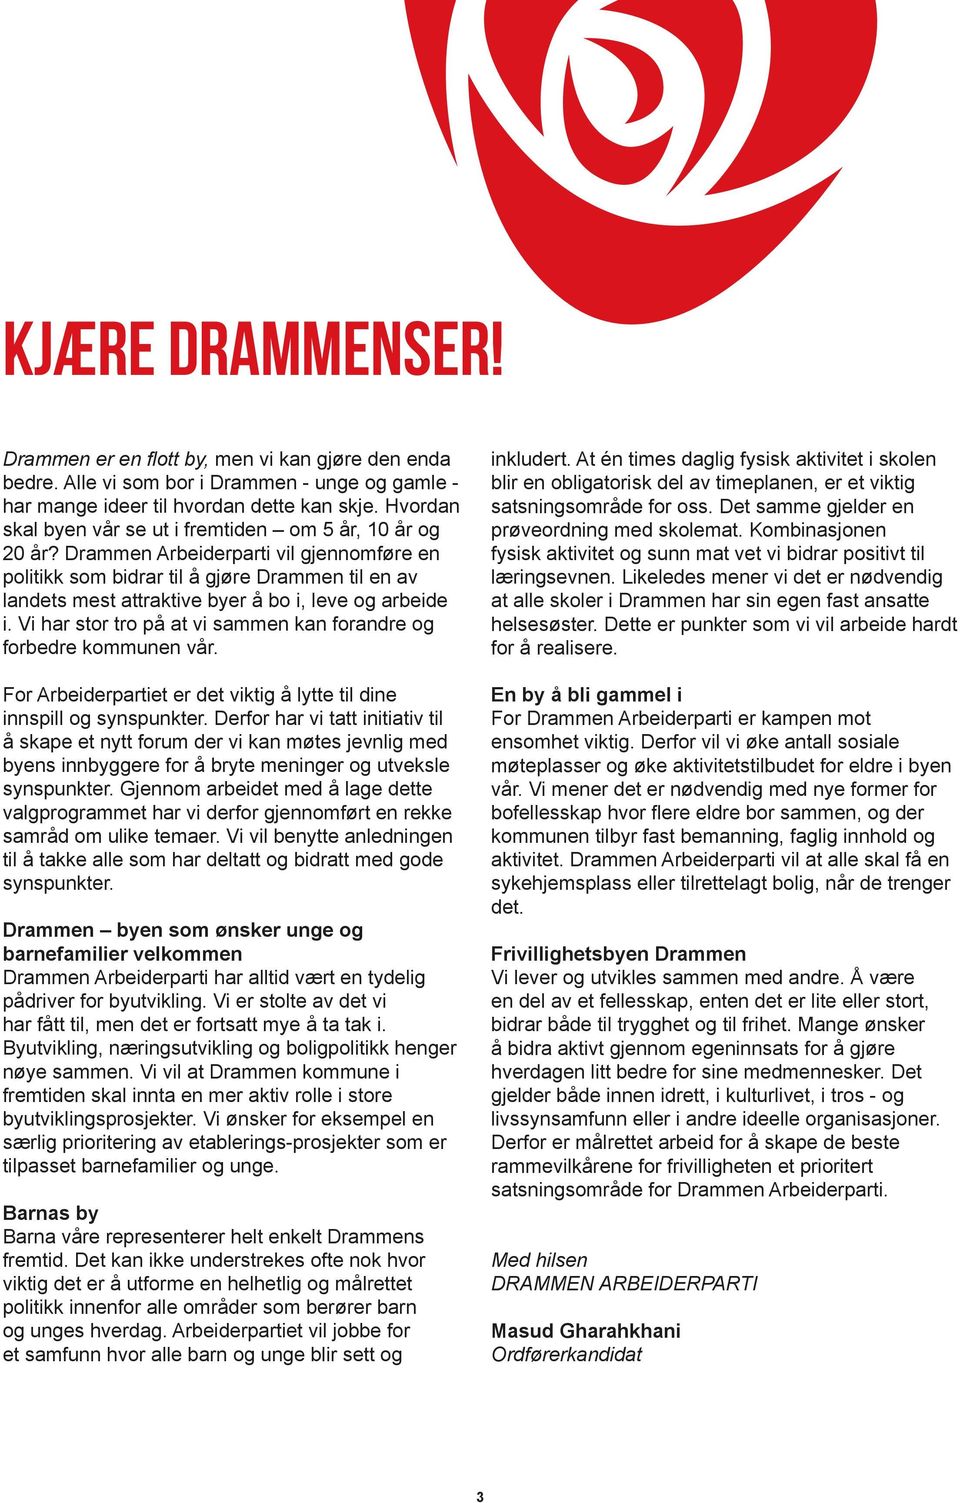 Drammen Arbeiderparti vil gjennomføre en politikk som bidrar til å gjøre Drammen til en av landets mest attraktive byer å bo i, leve og arbeide i.